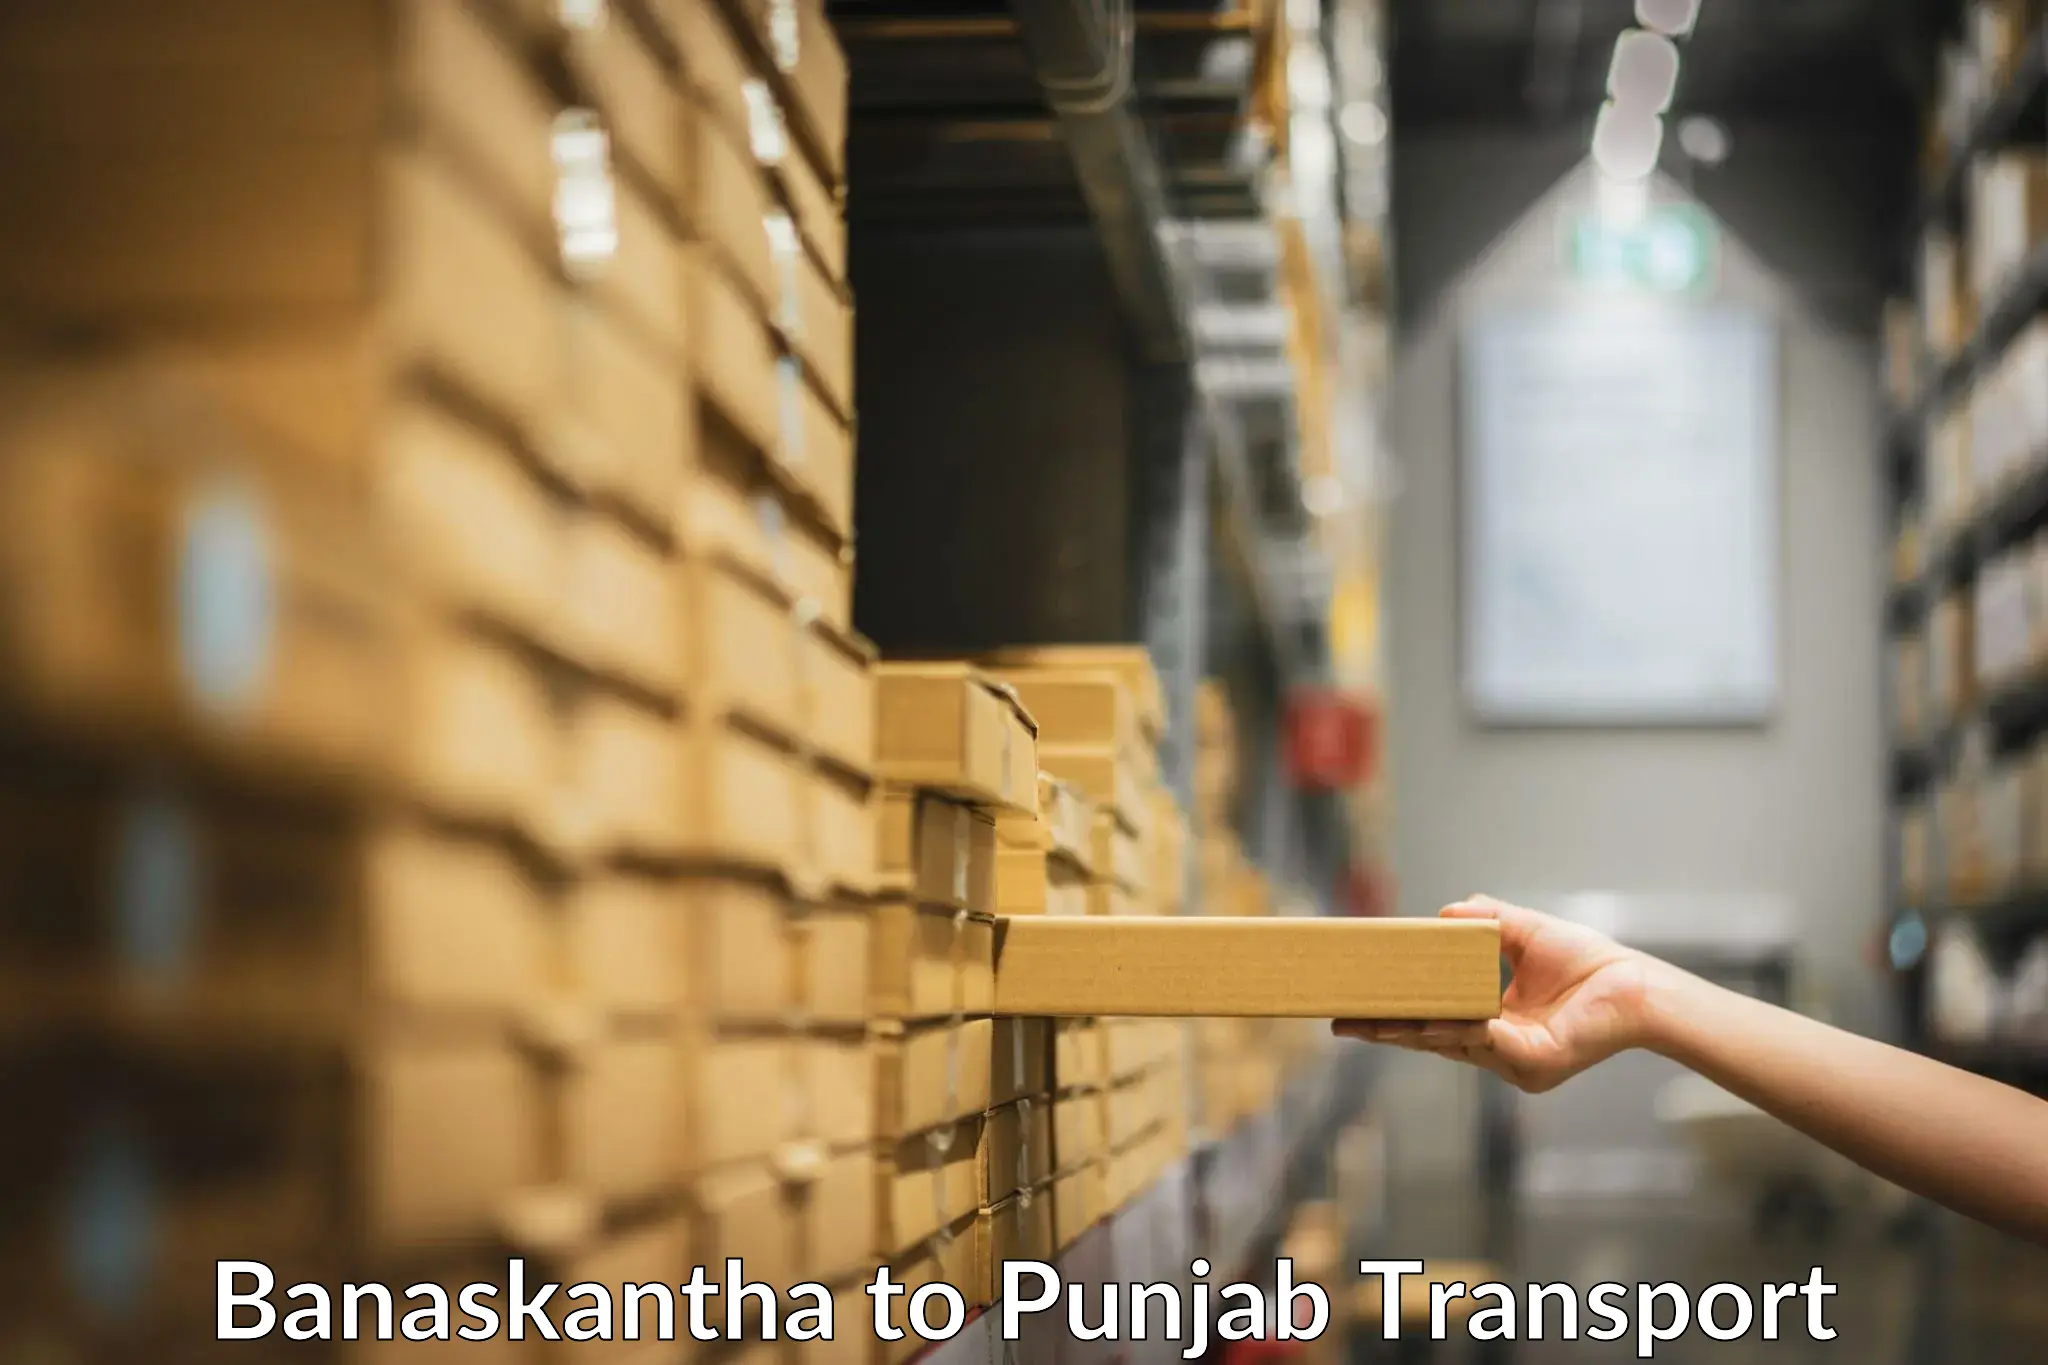 Commercial transport service Banaskantha to Amritsar